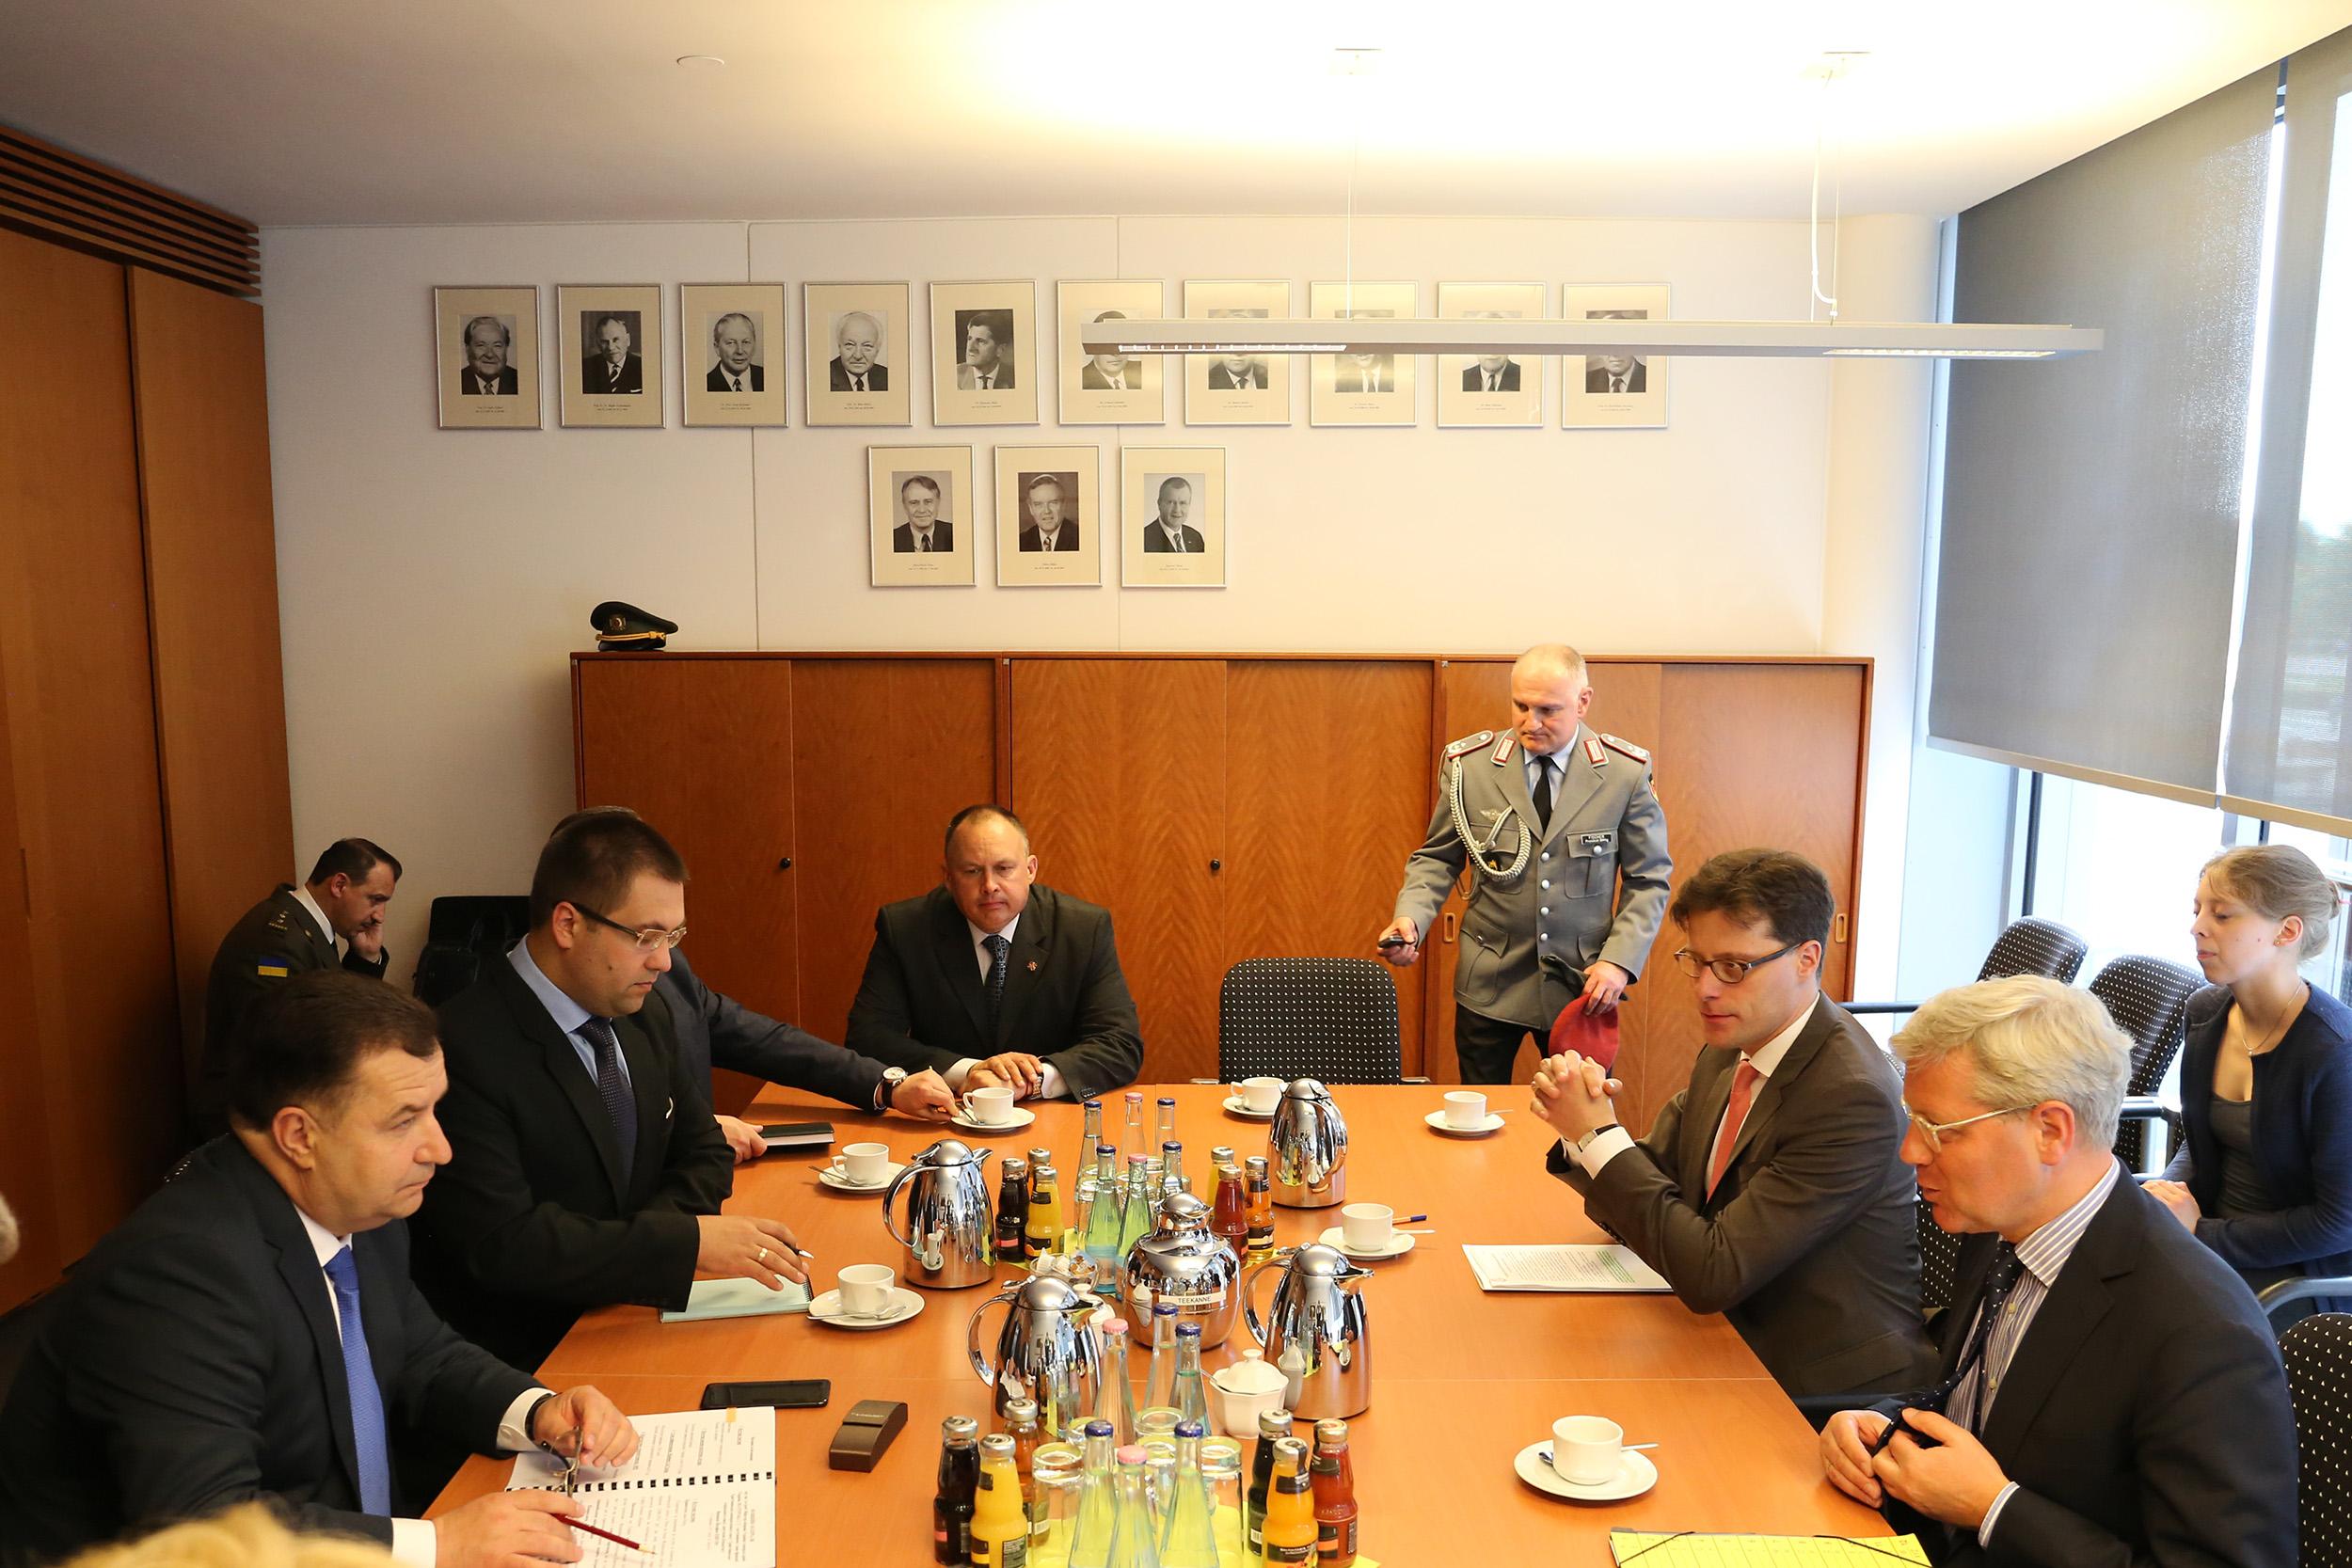  Полторак встретился с председателем комитета по вопросам внешних дел Бундестага_2